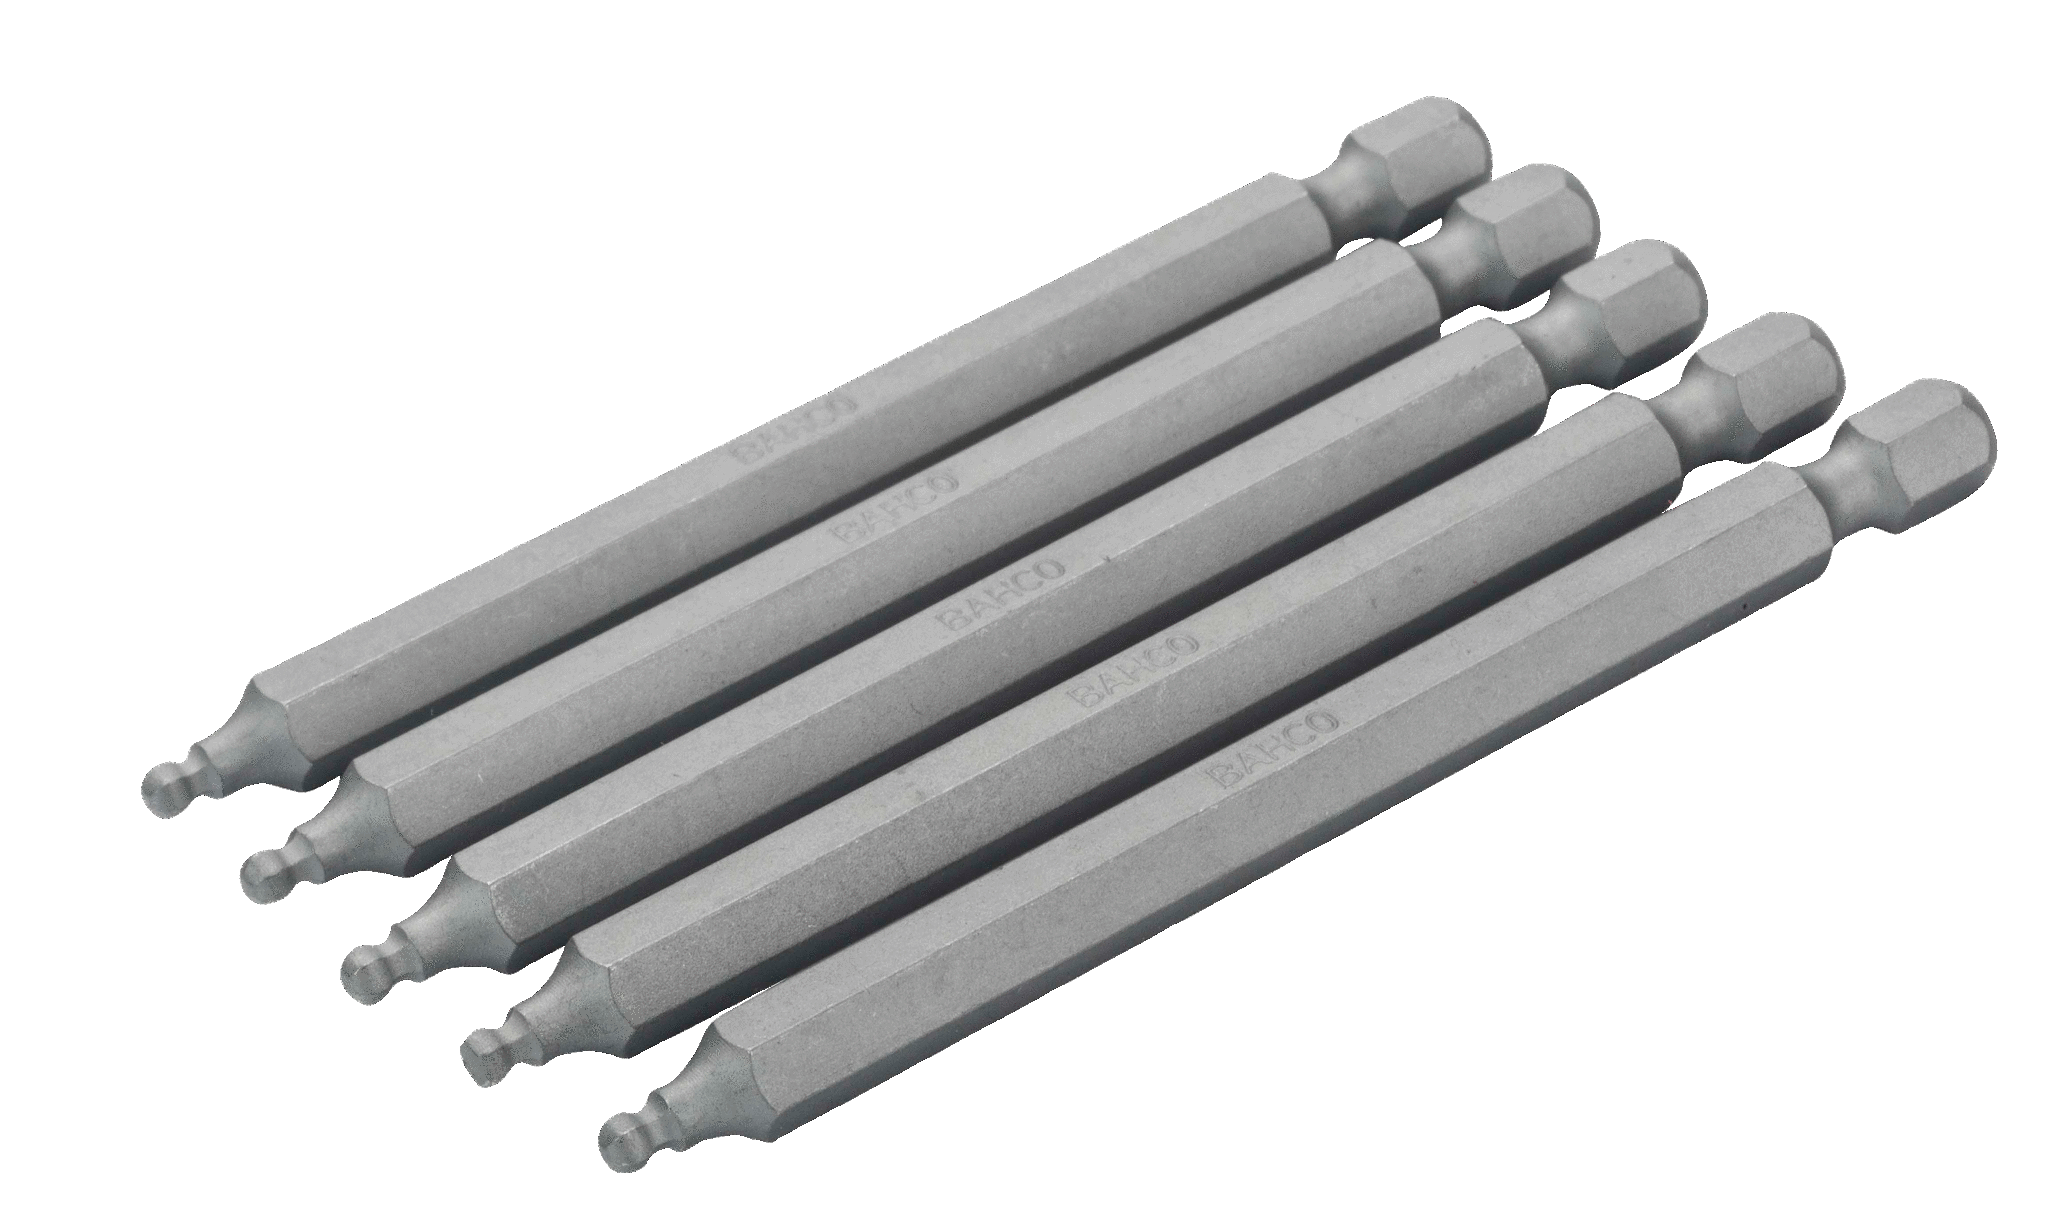 Шестигранные биты с шаровым наконечником для стандартных отверток, метрические размеры, 89 мм BAHCO 59S/H6BALL